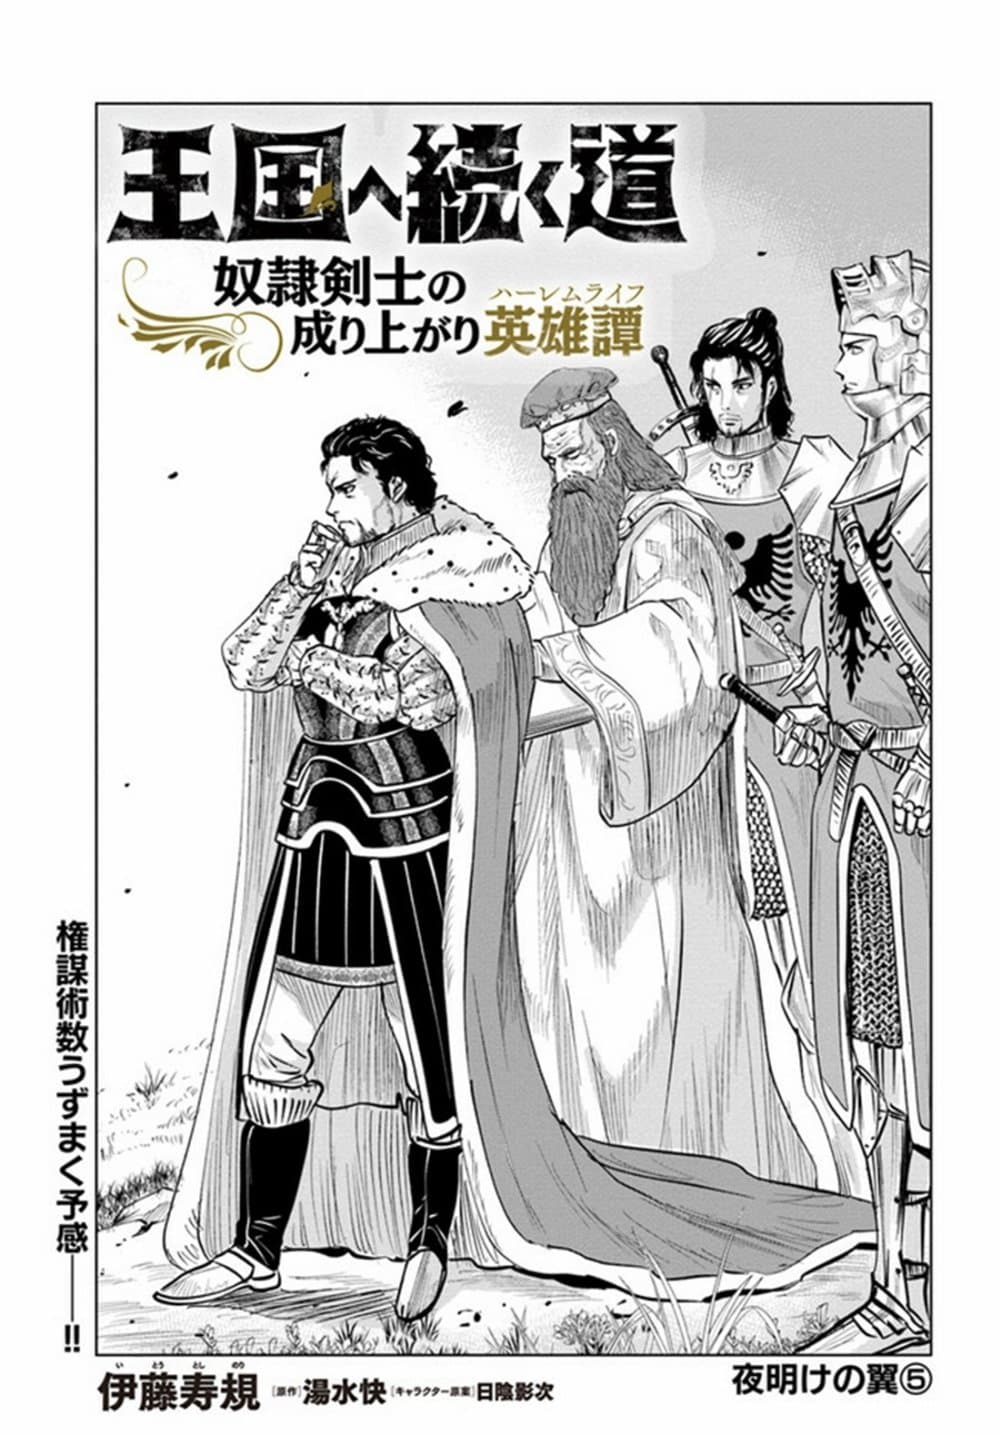 Oukoku e Tsuzuku Michi dorei Kenshi no Nariagari Eiyutan (Haaremu Raifu) - Road to the Kingdom Slave Swordsman the Rise of Heroes - Harem Life 27-27